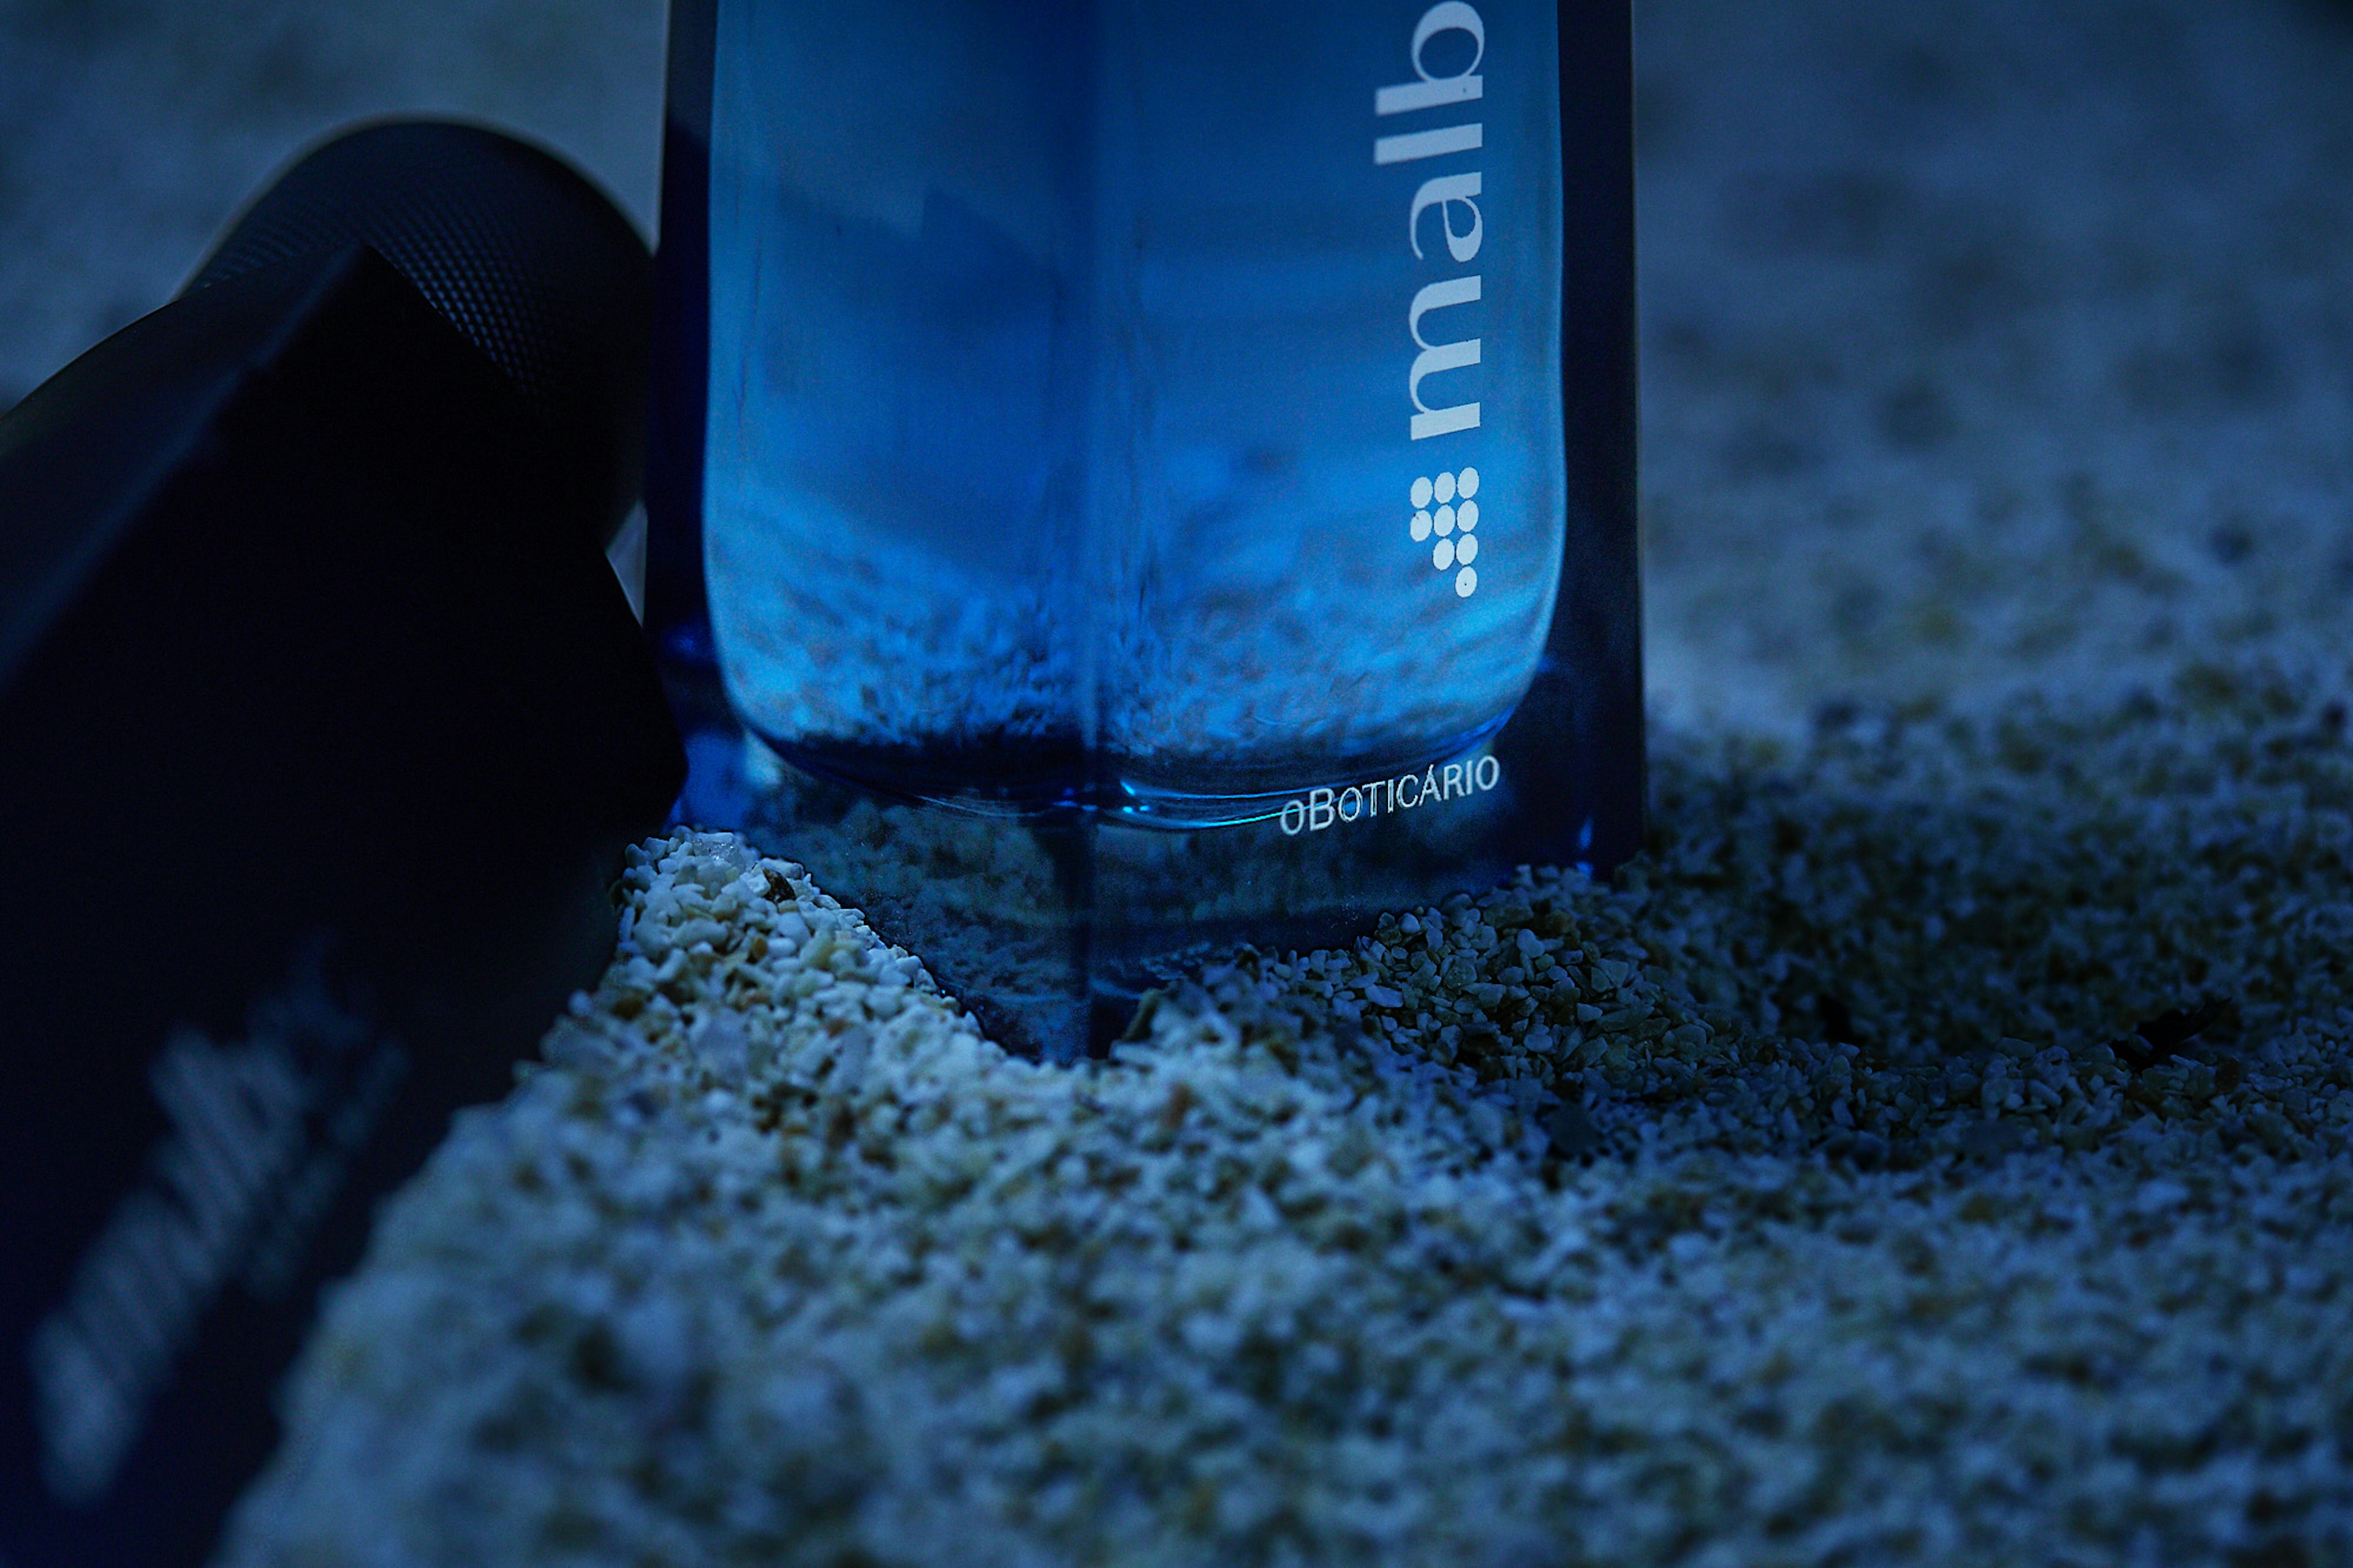 Processo de criação da fotografia do dois frascos do perfume Malbec Bleu do o Boticário em cima de uma tora de madeira na areia da praia de noite